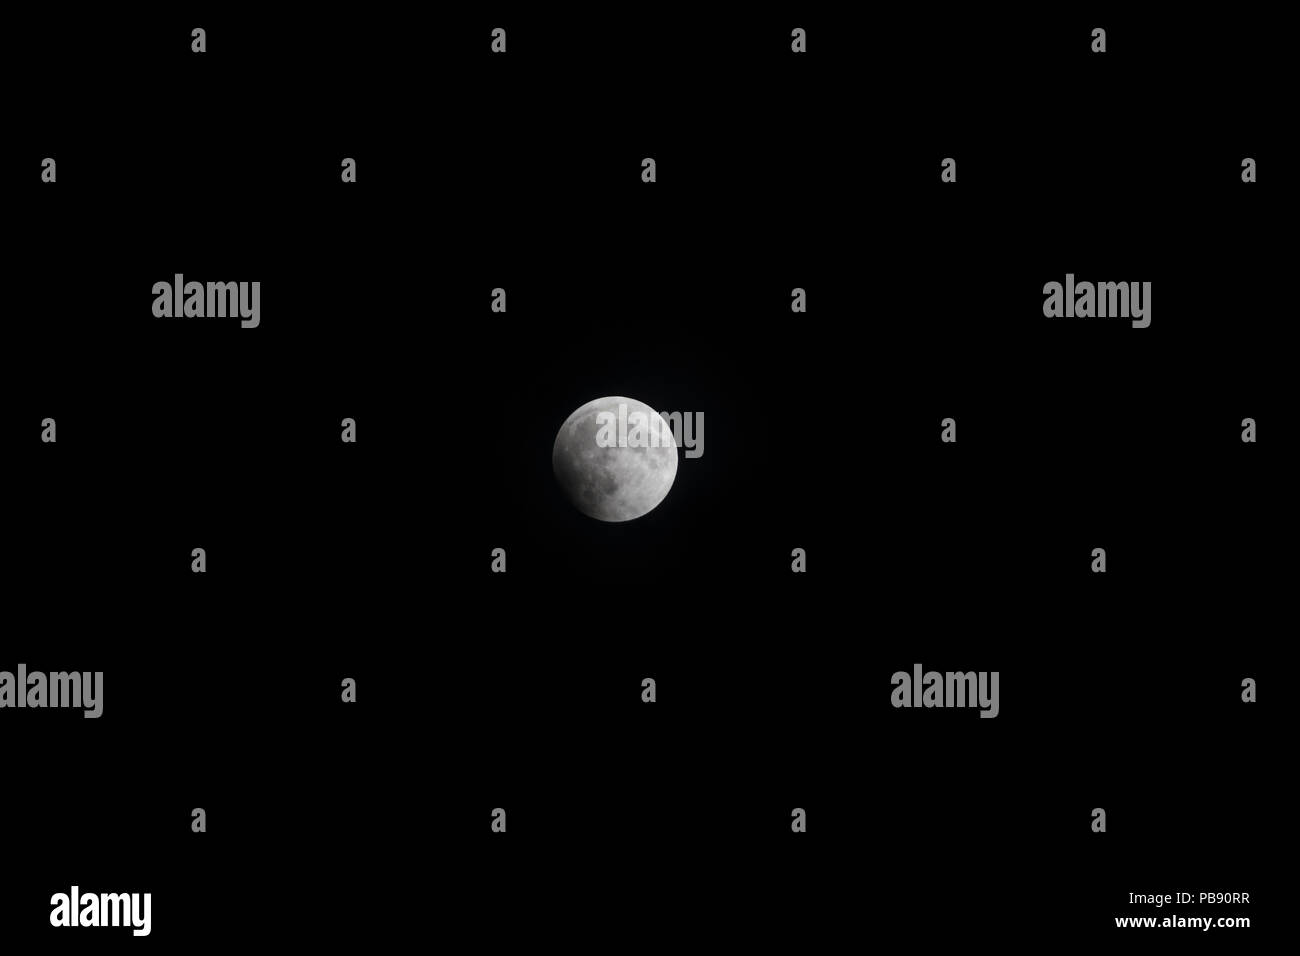 Dubaï, Émirats arabes unis. 27 juin 2018. La pénombre de la terre commencer à toucher le visage de la Lune, l'éclipse lunaire totale, 27 juin 2018, DUBAÏ, ÉMIRATS ARABES UNIS Crédit : David GABIS/Alamy Live News Banque D'Images